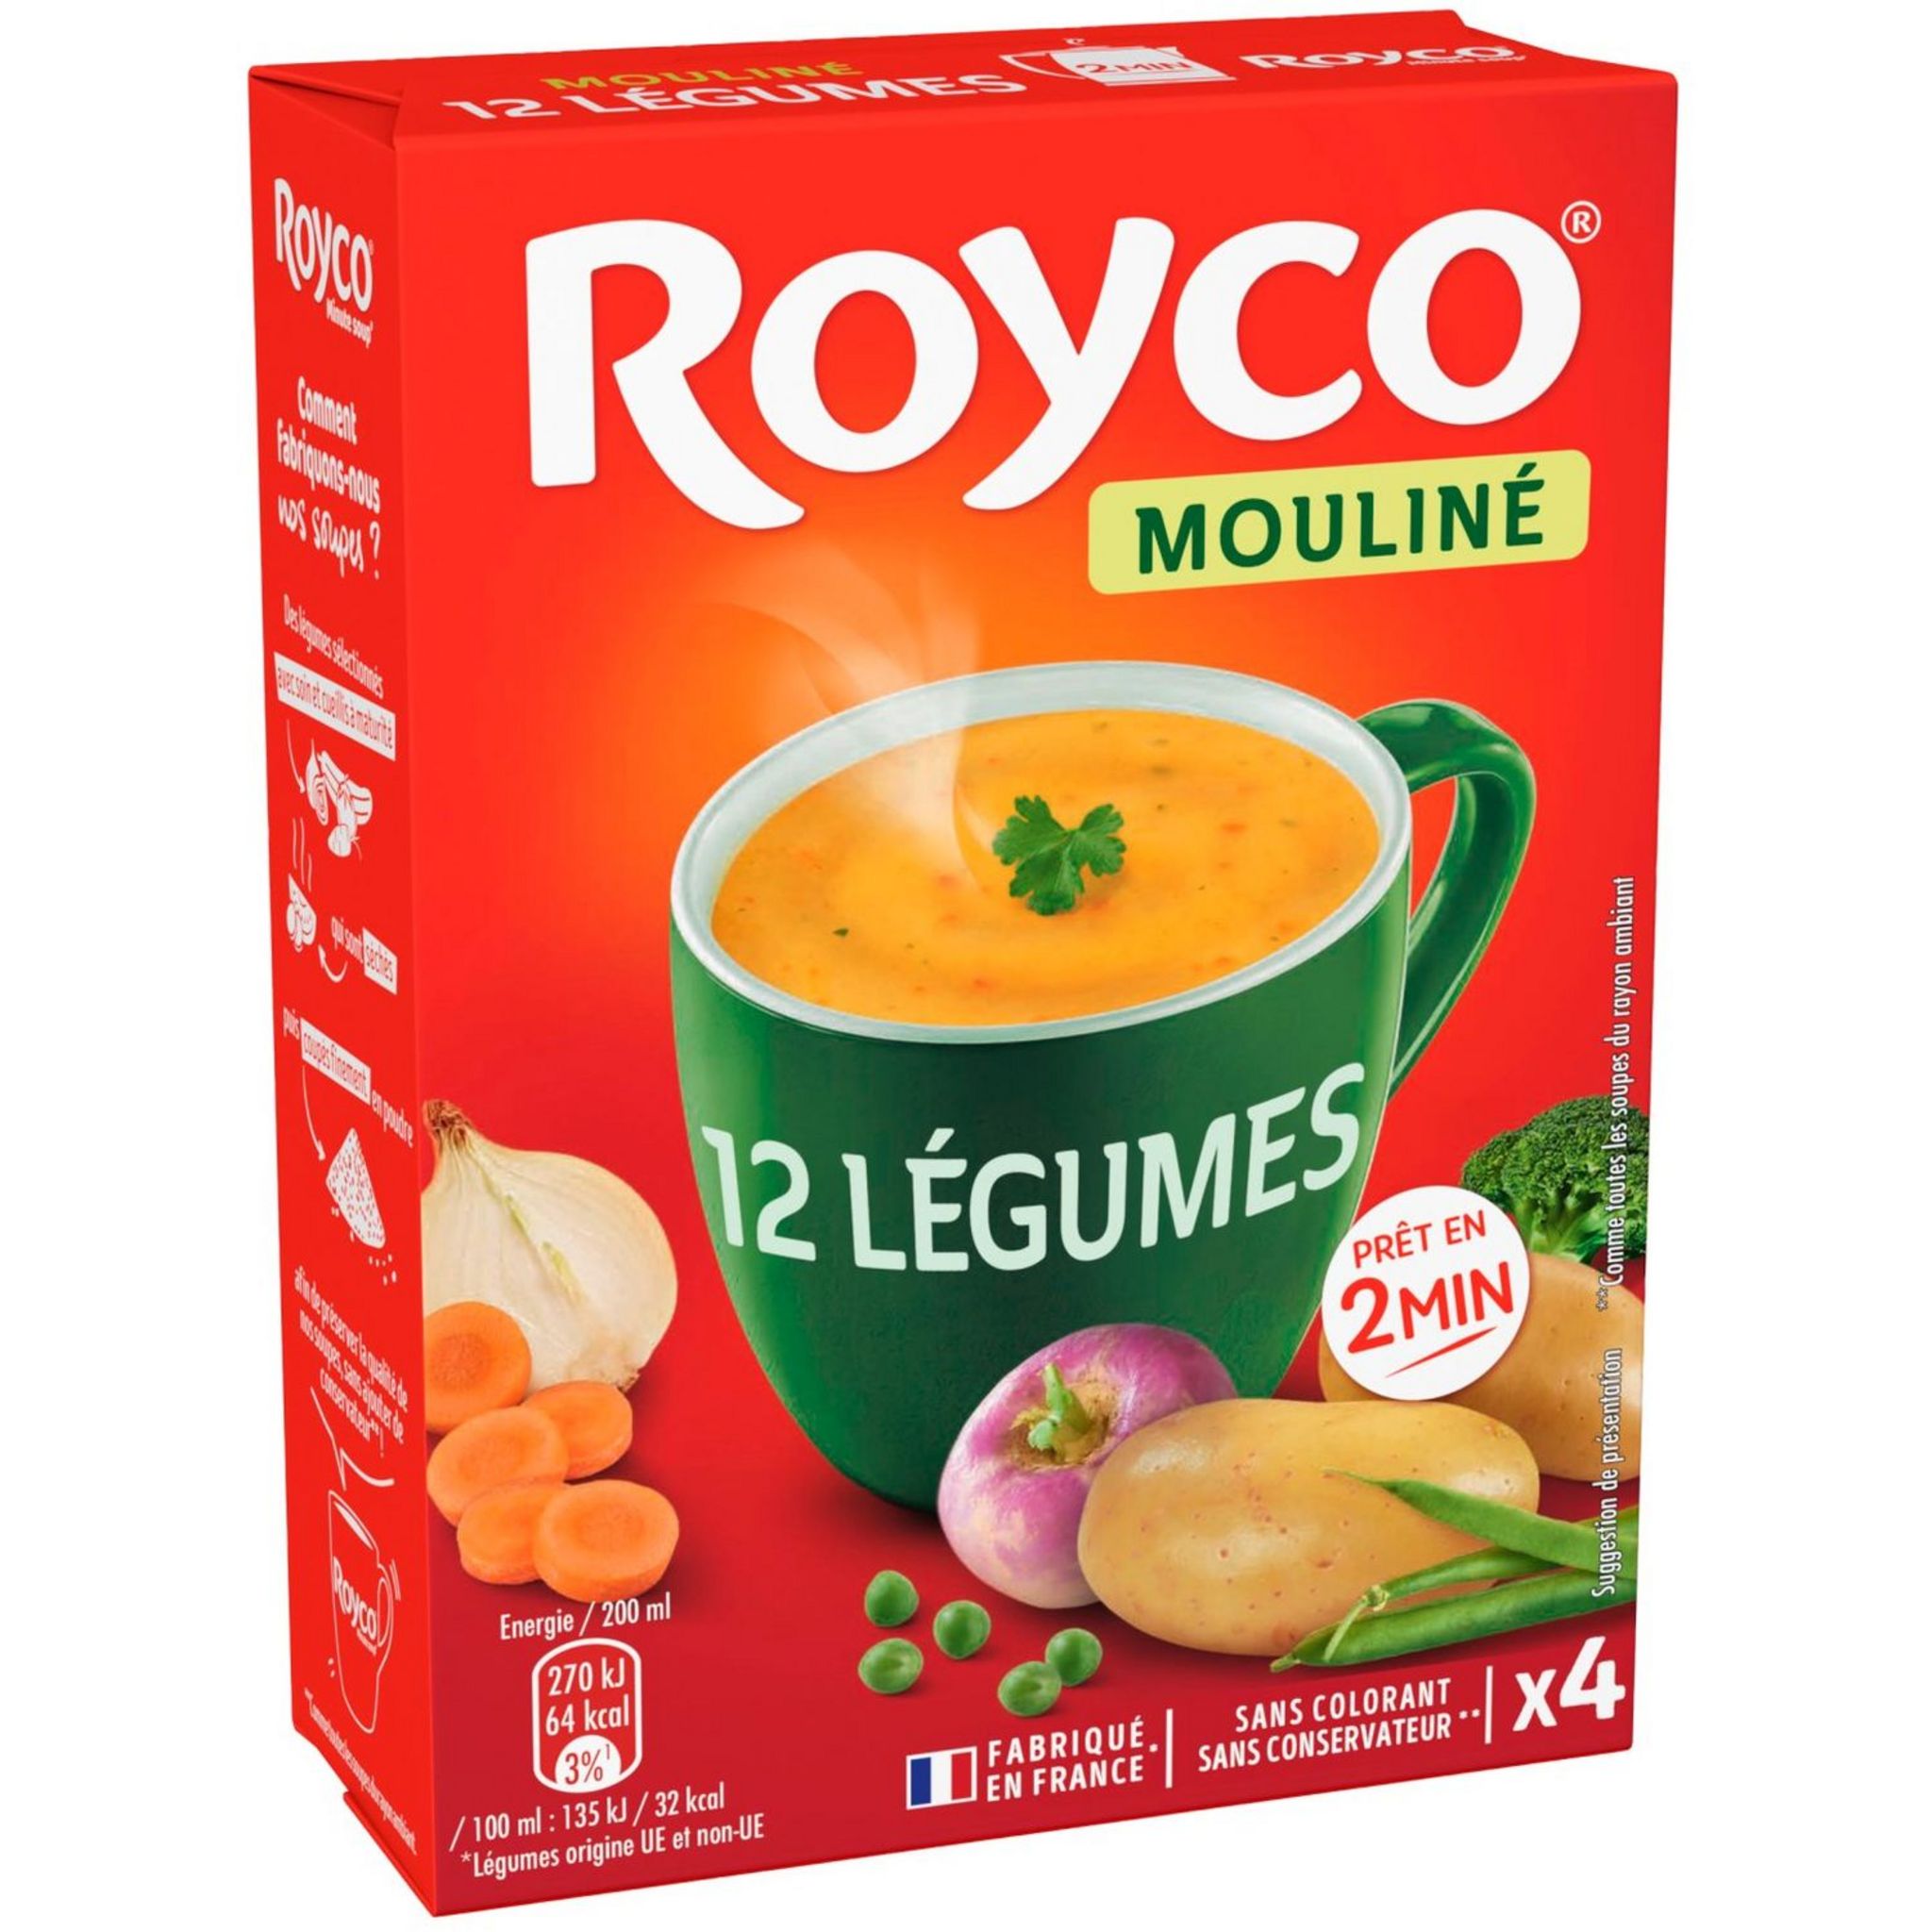 TREVIJANO Soupe Paysanne: 7 sachets de 100 g chacun (700 g de légumes  déshydratés). Chaque sachet contient 8 portions de soupe